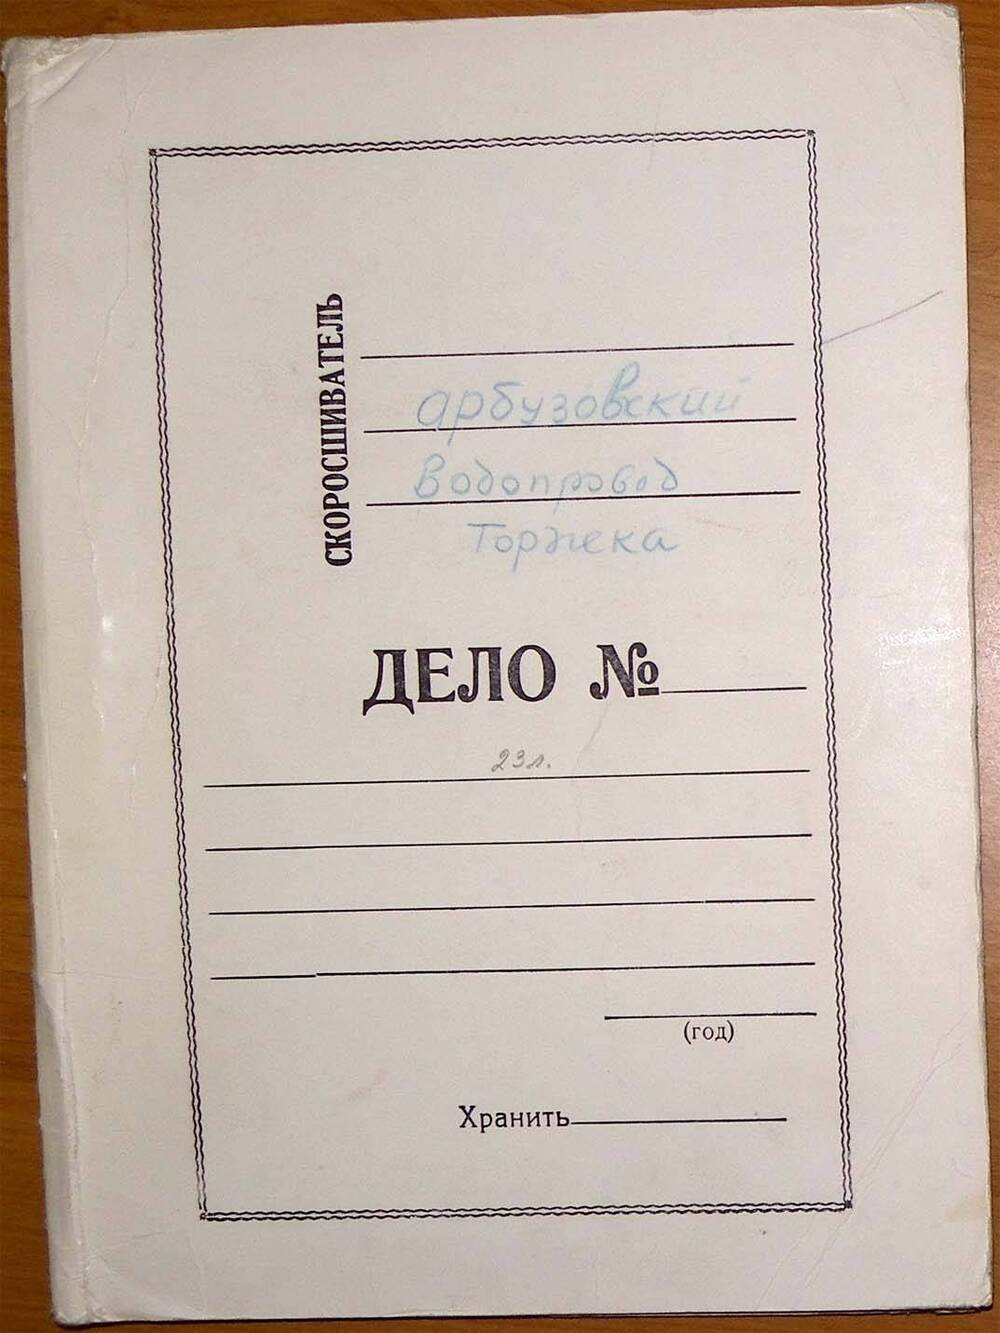 Папка с материалами Н.А. Турухана Арбузовский водопровод торжка